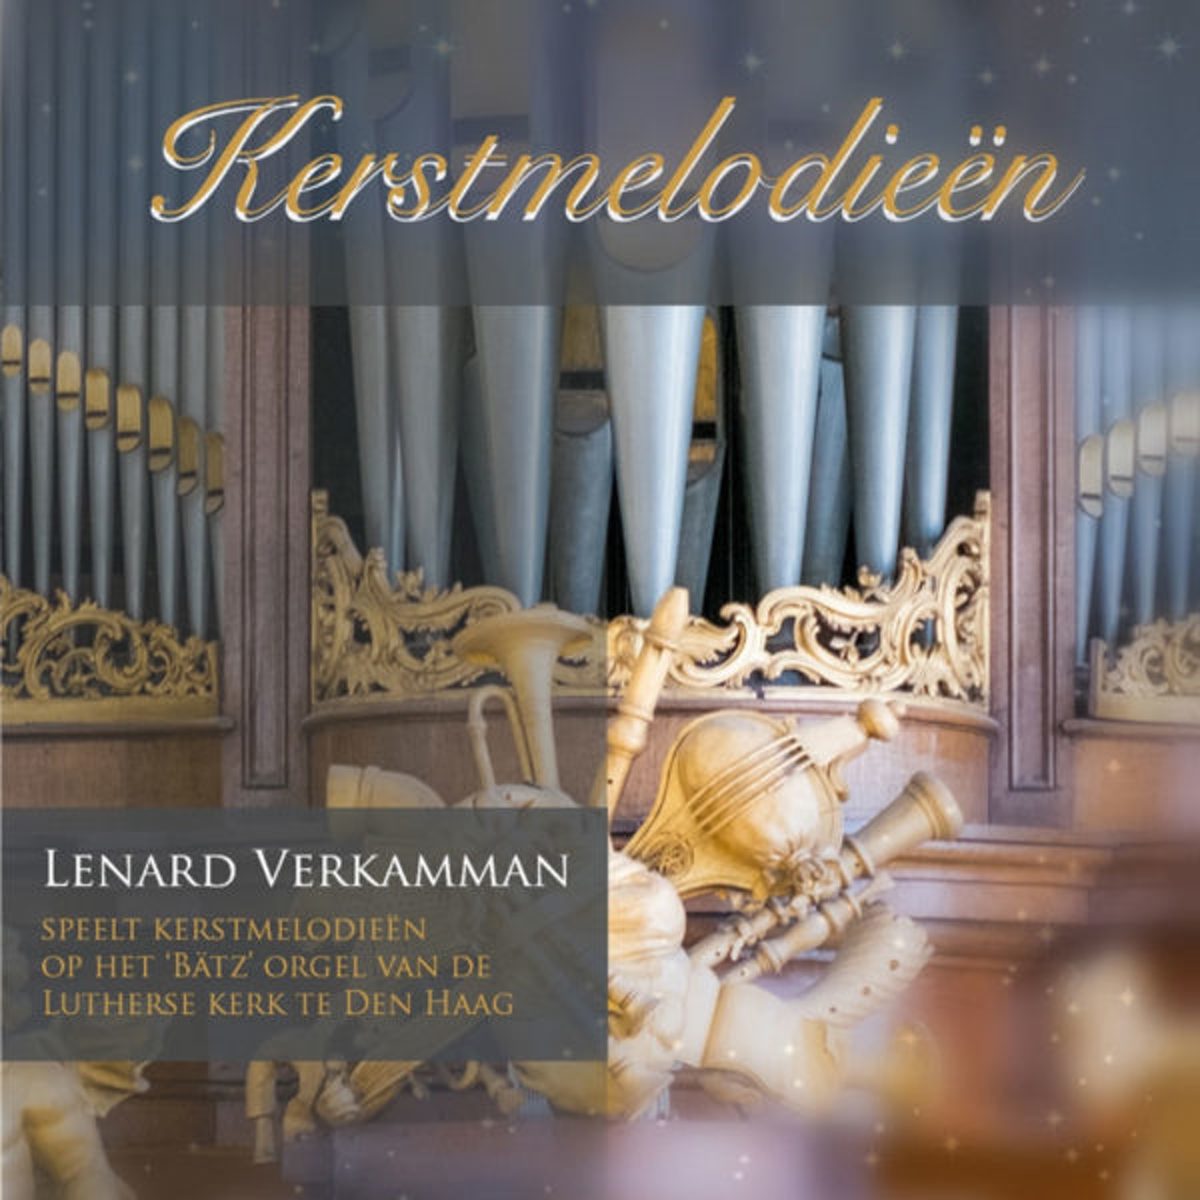 Lenard Verkammen speelt Kerstmelodieen op het Batz' orgel van de Lutherse kerk te Den Haag